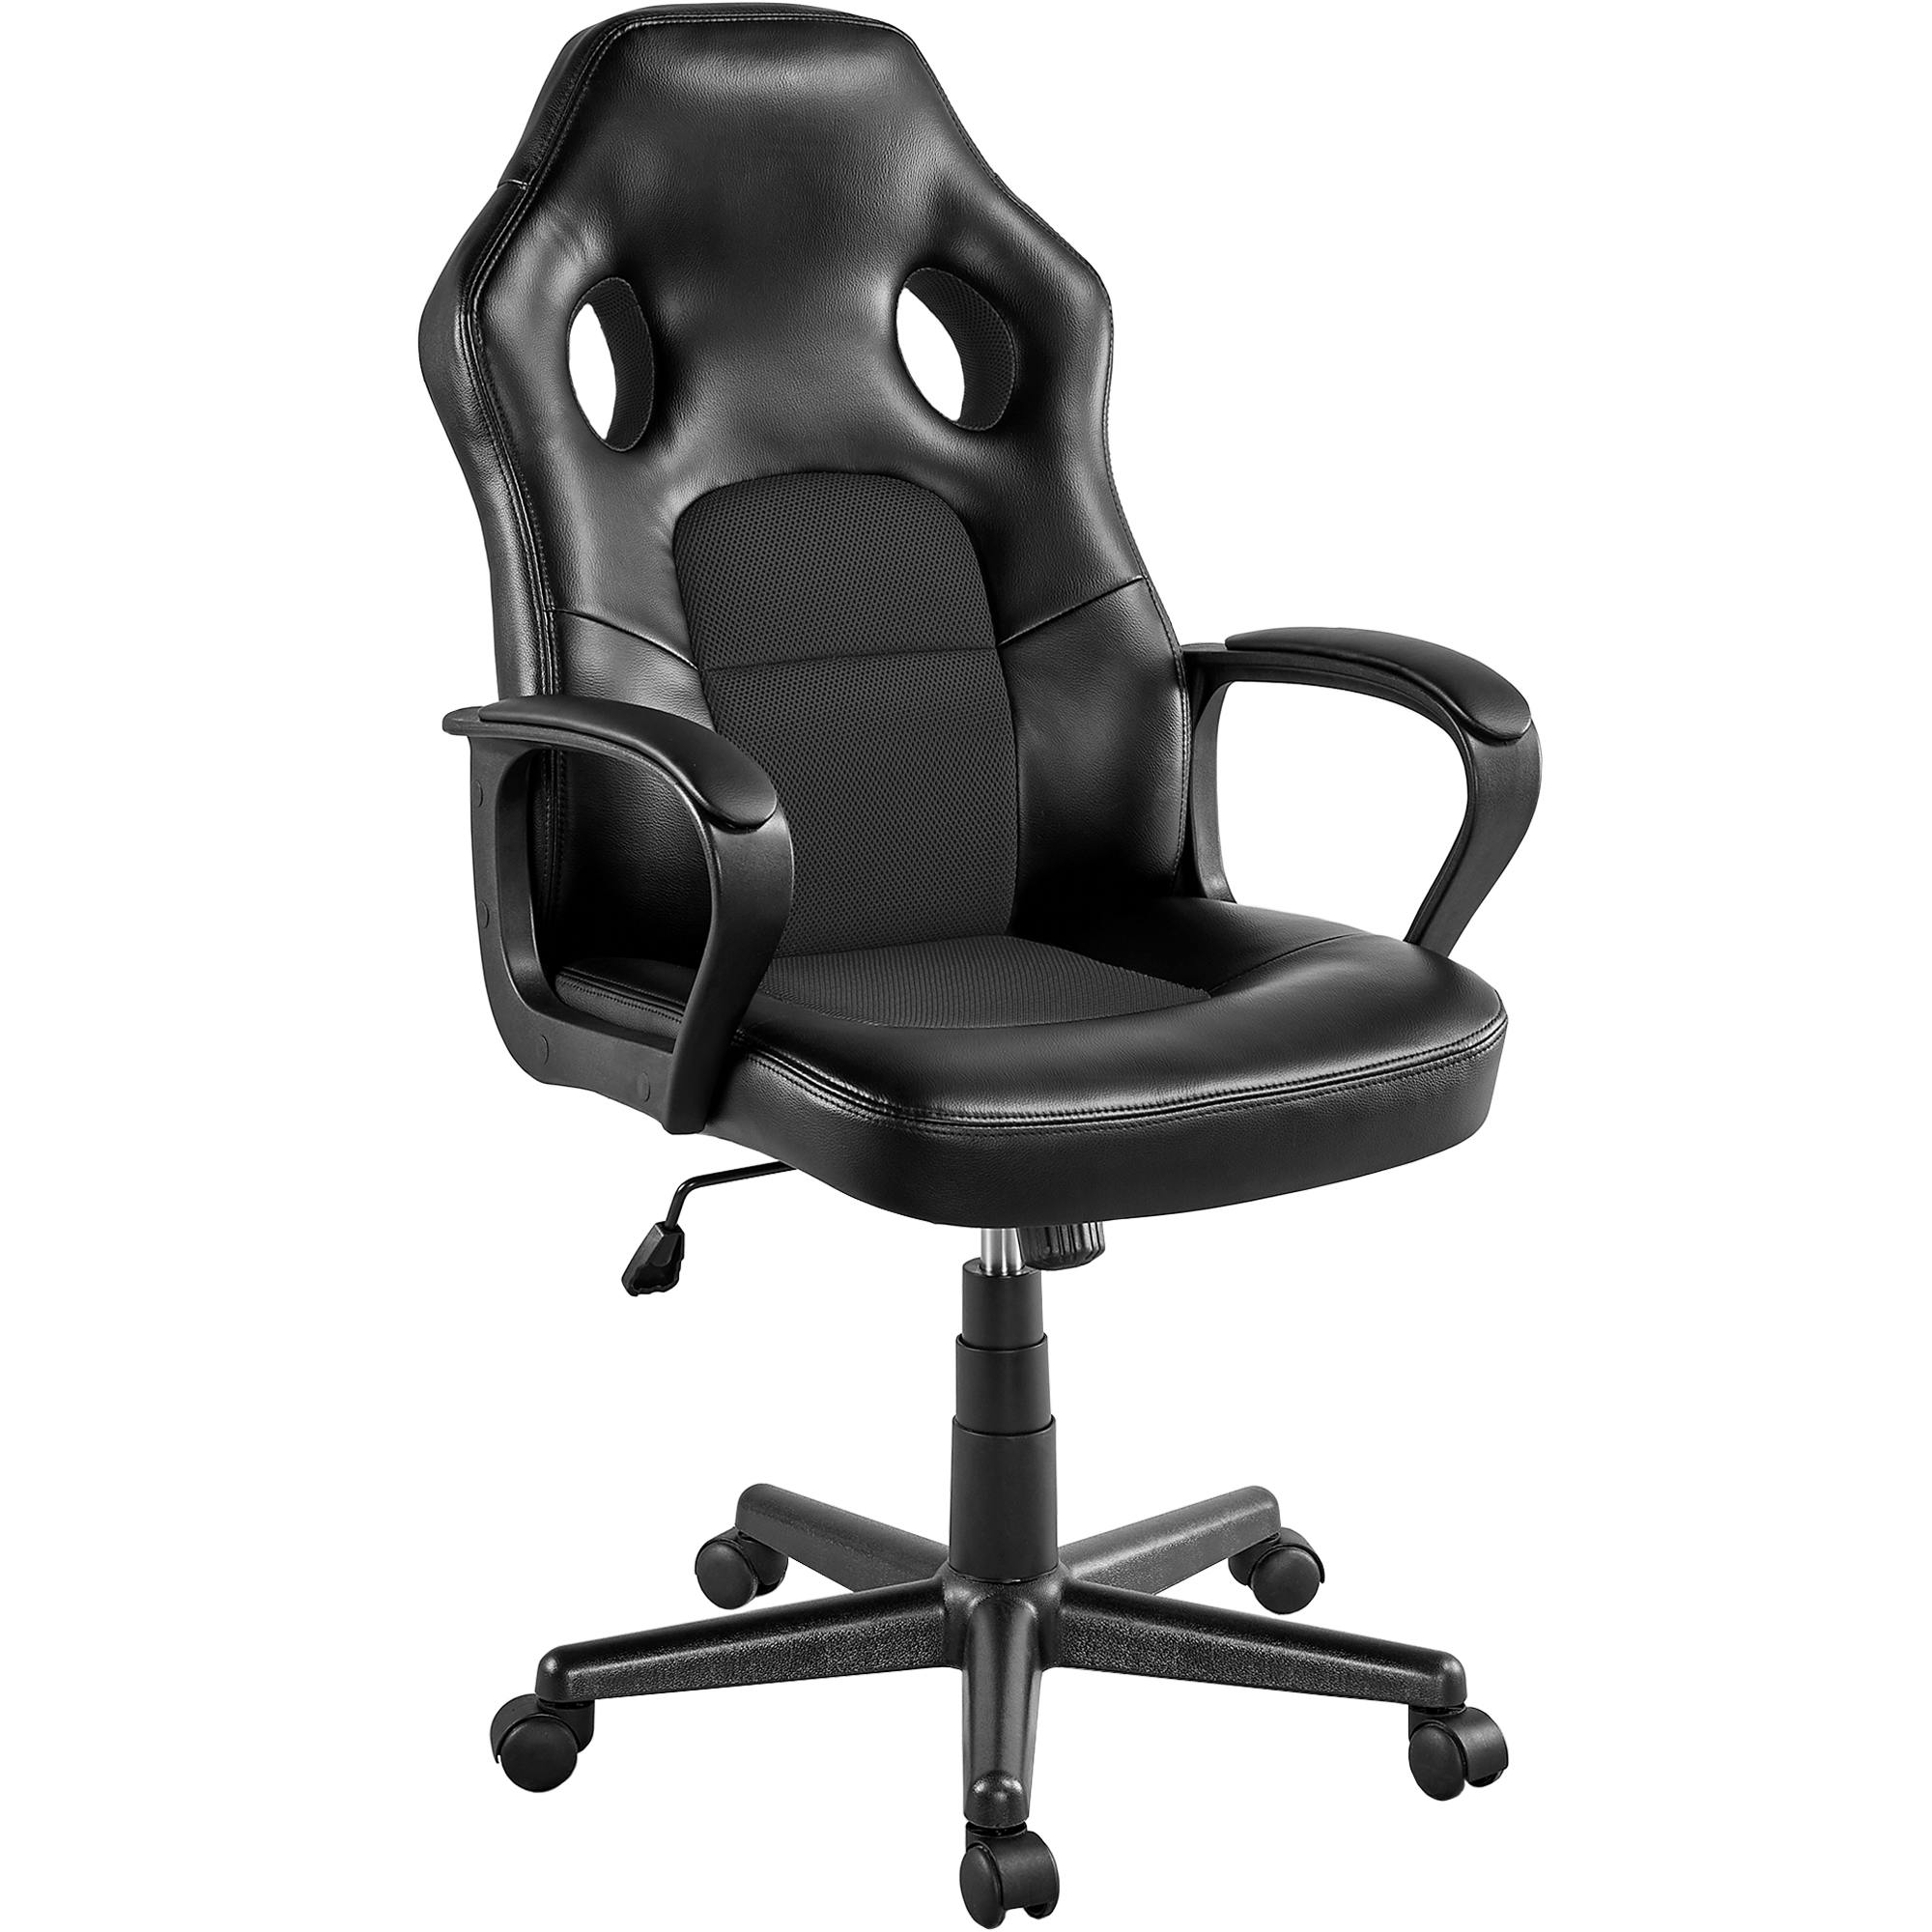 Höhenverstellbarer ergonomischer Gaming-Stuhl aus Kunstleder mit